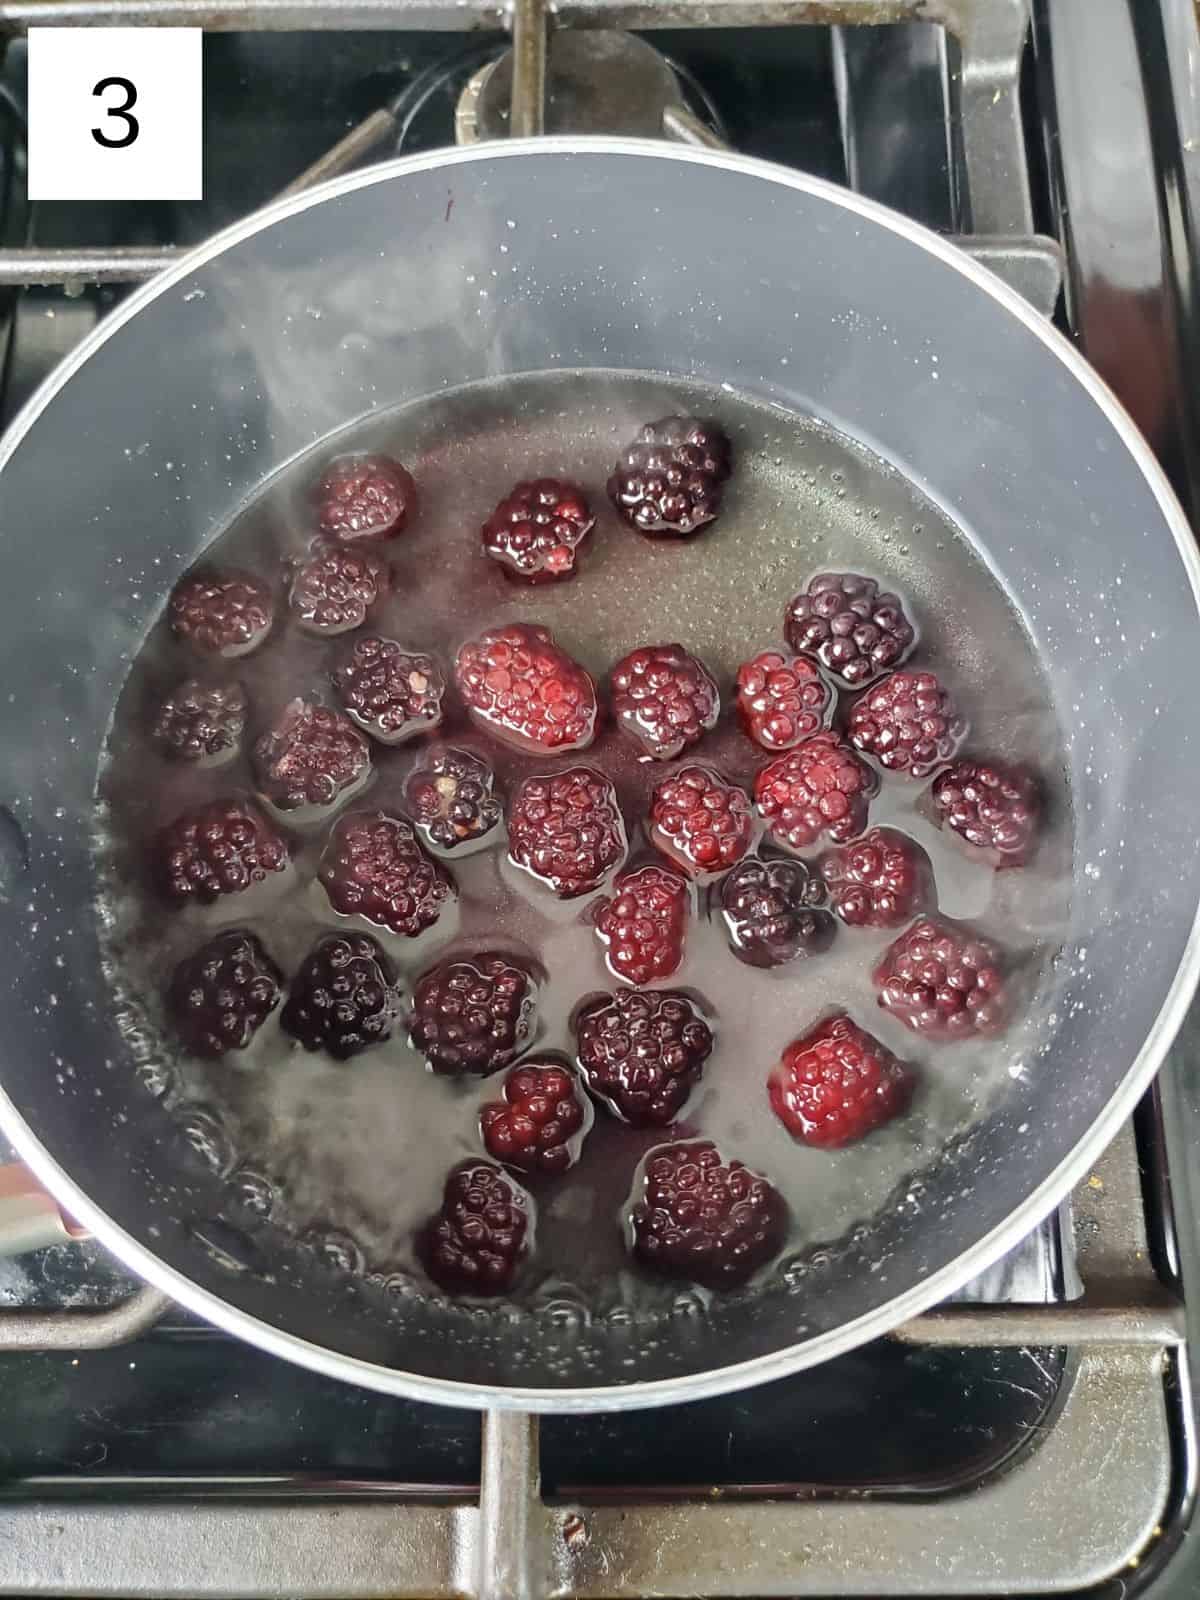 blackberries on a sugar mixture.